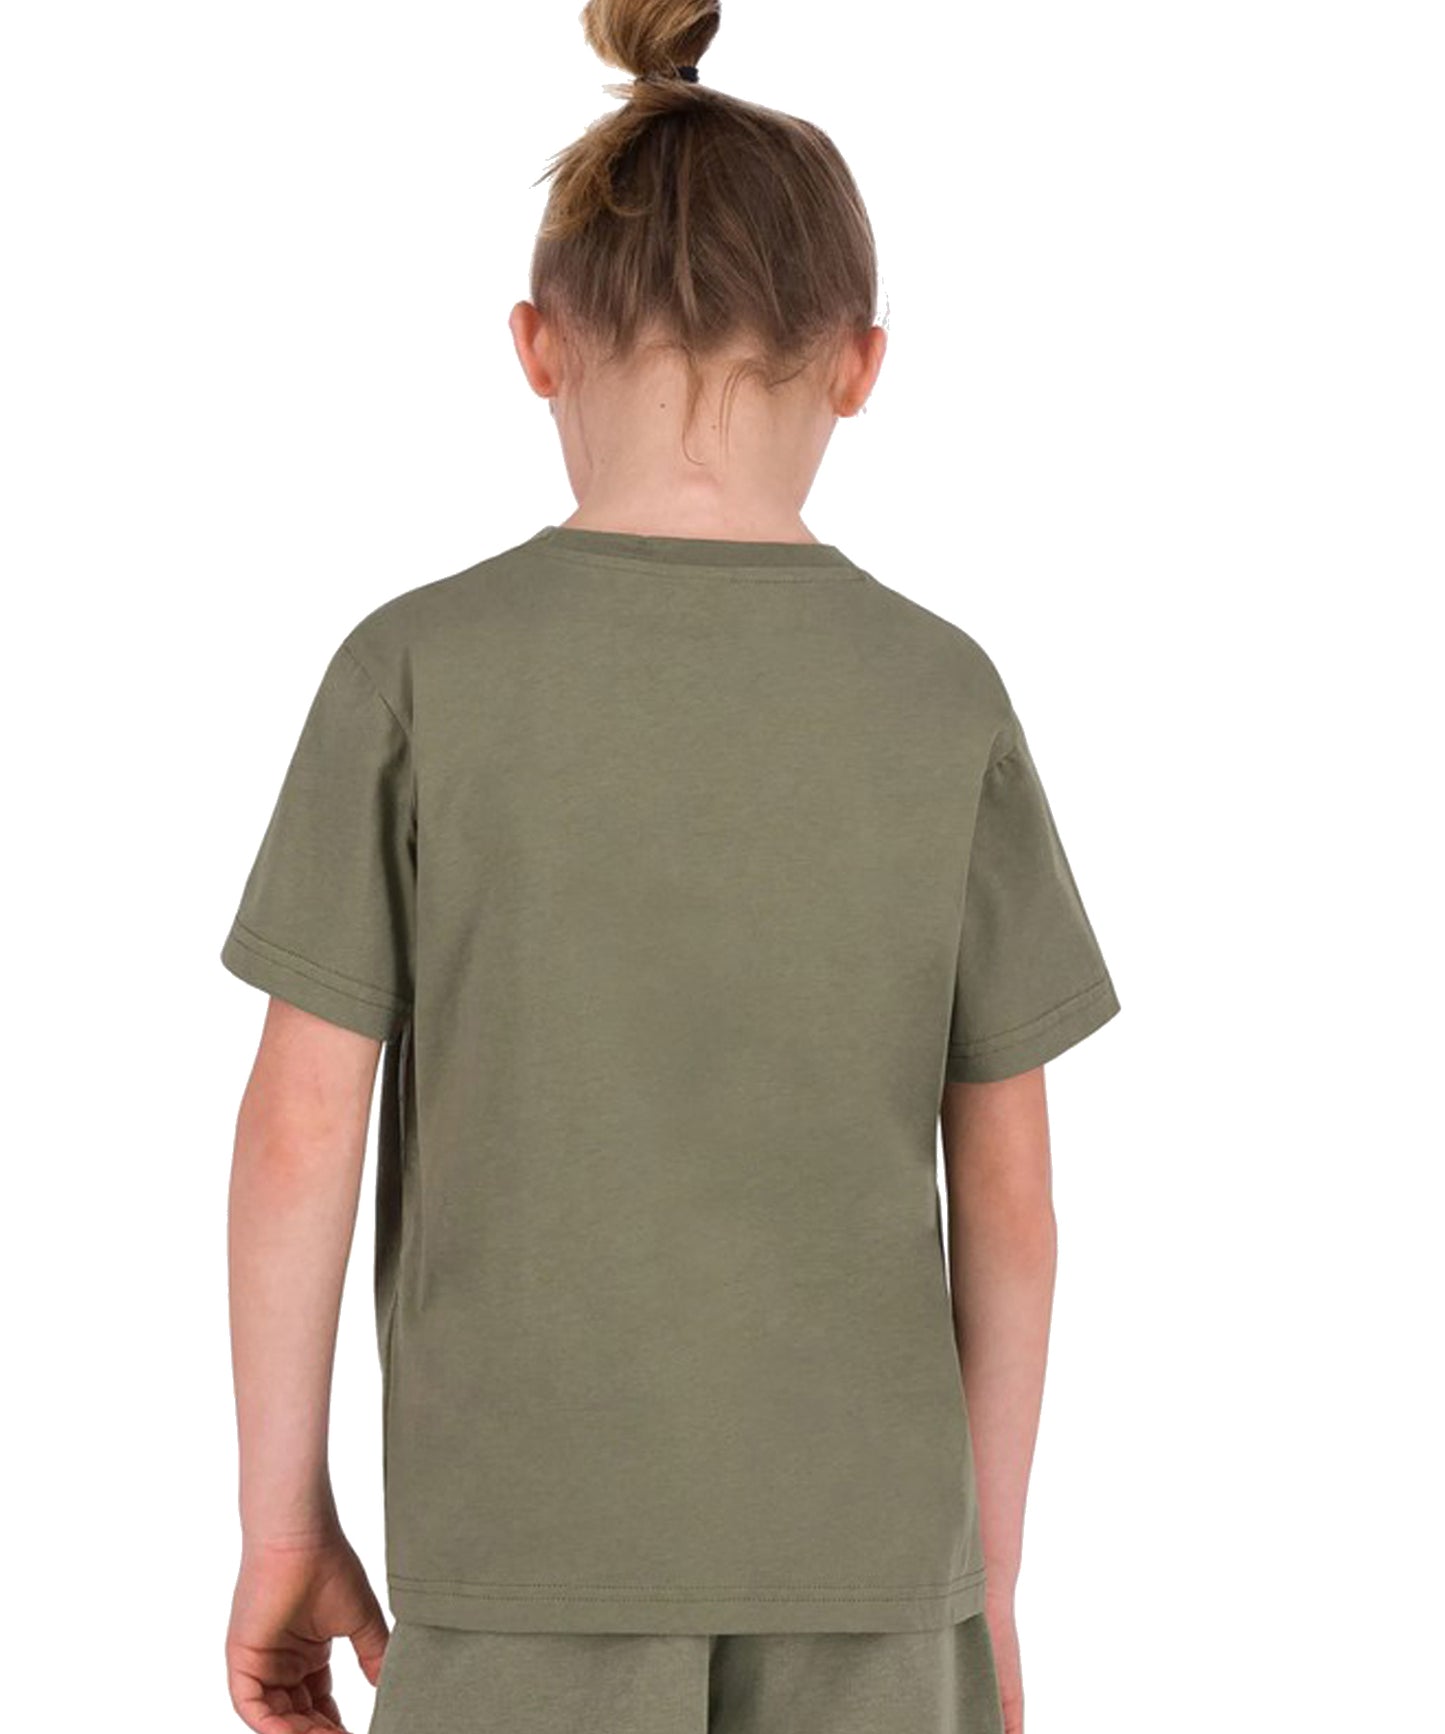 Camiseta para niños / as Champion con un corte clásico-color verde y logo Champion en el pecho y en el brazo.